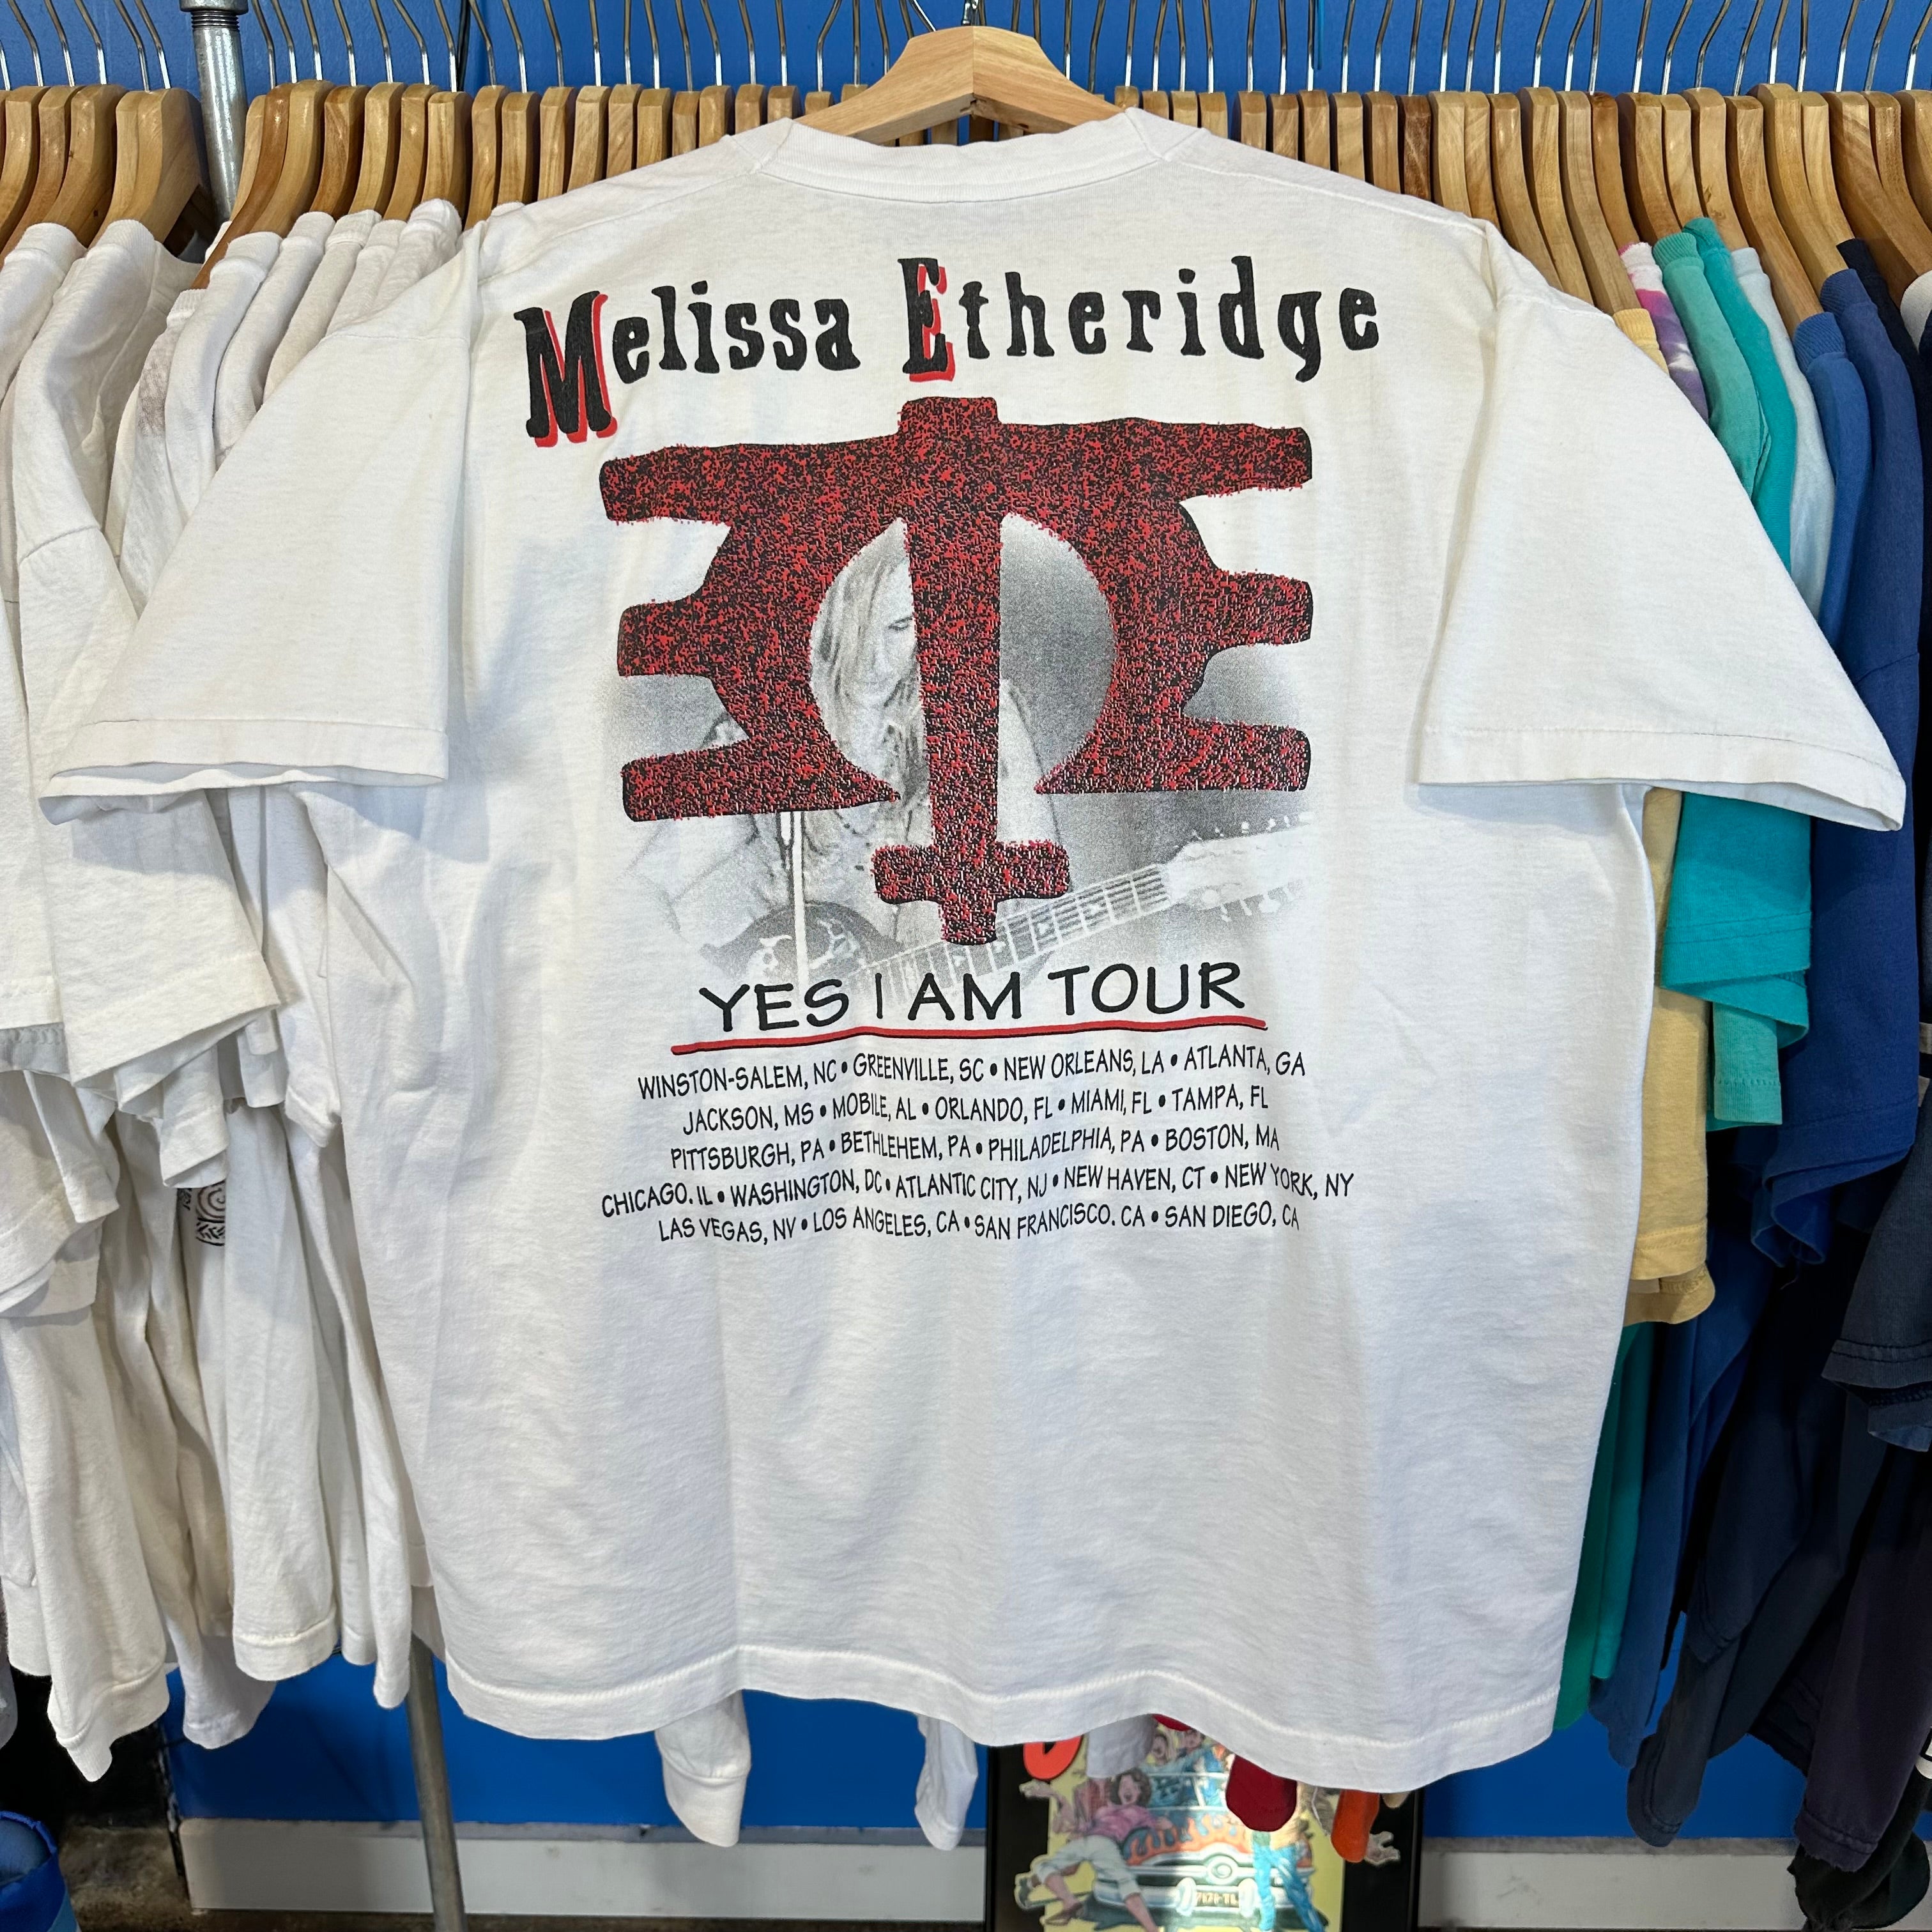 Melissa Etheridge “Yes I am” Tour T-Shirt